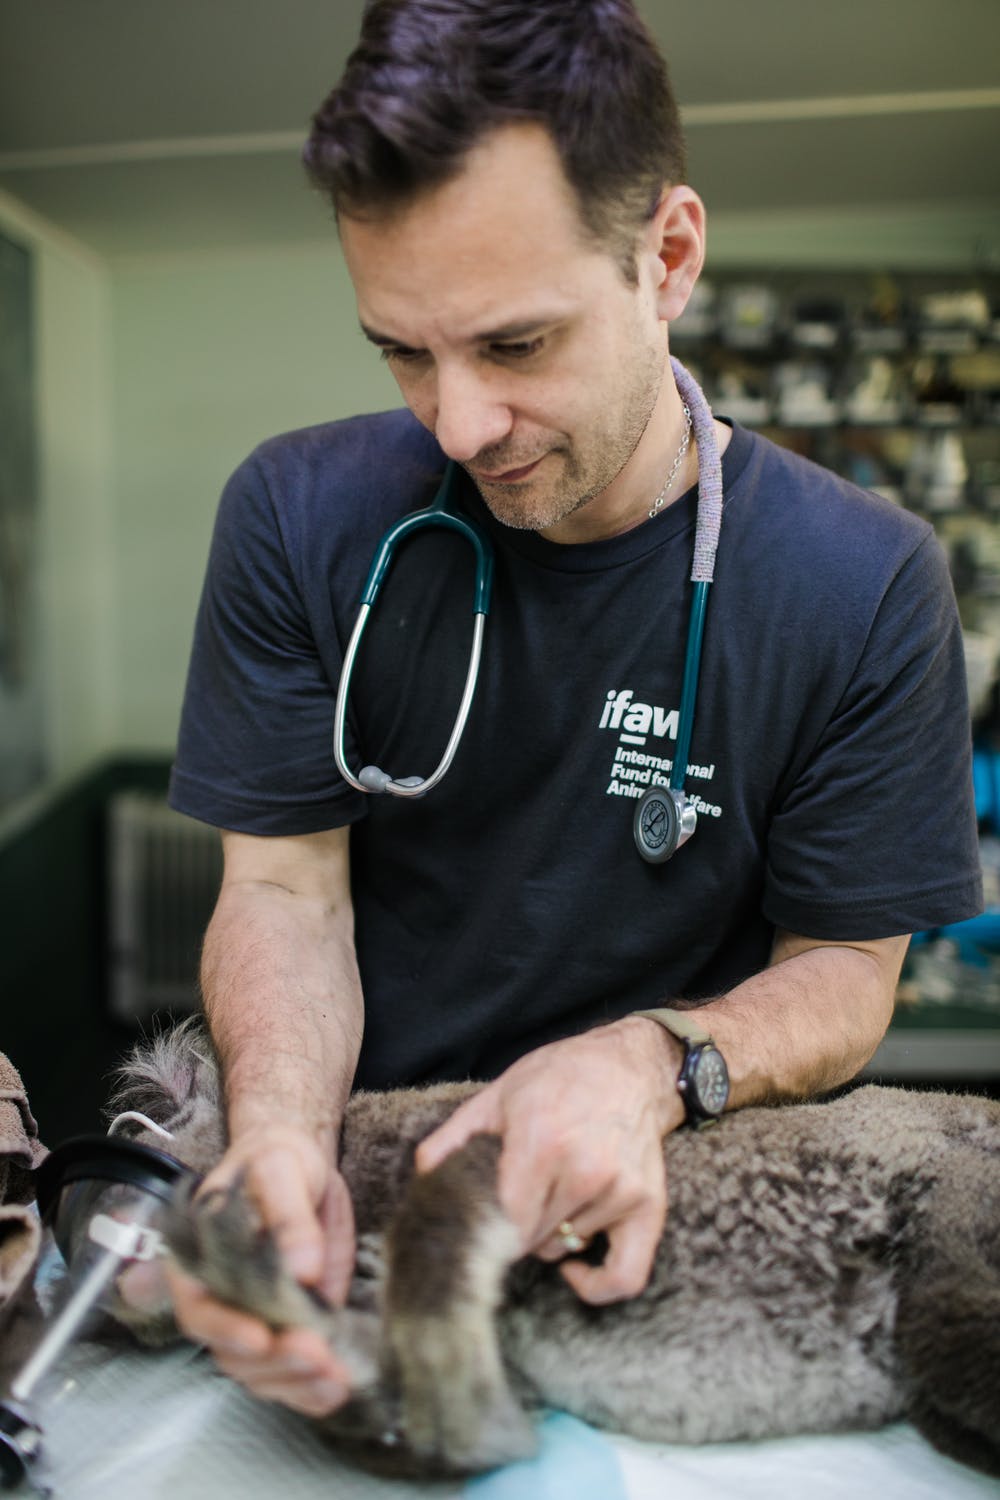 Edward est devenu infirmier vétérinaire | Source : Pexels